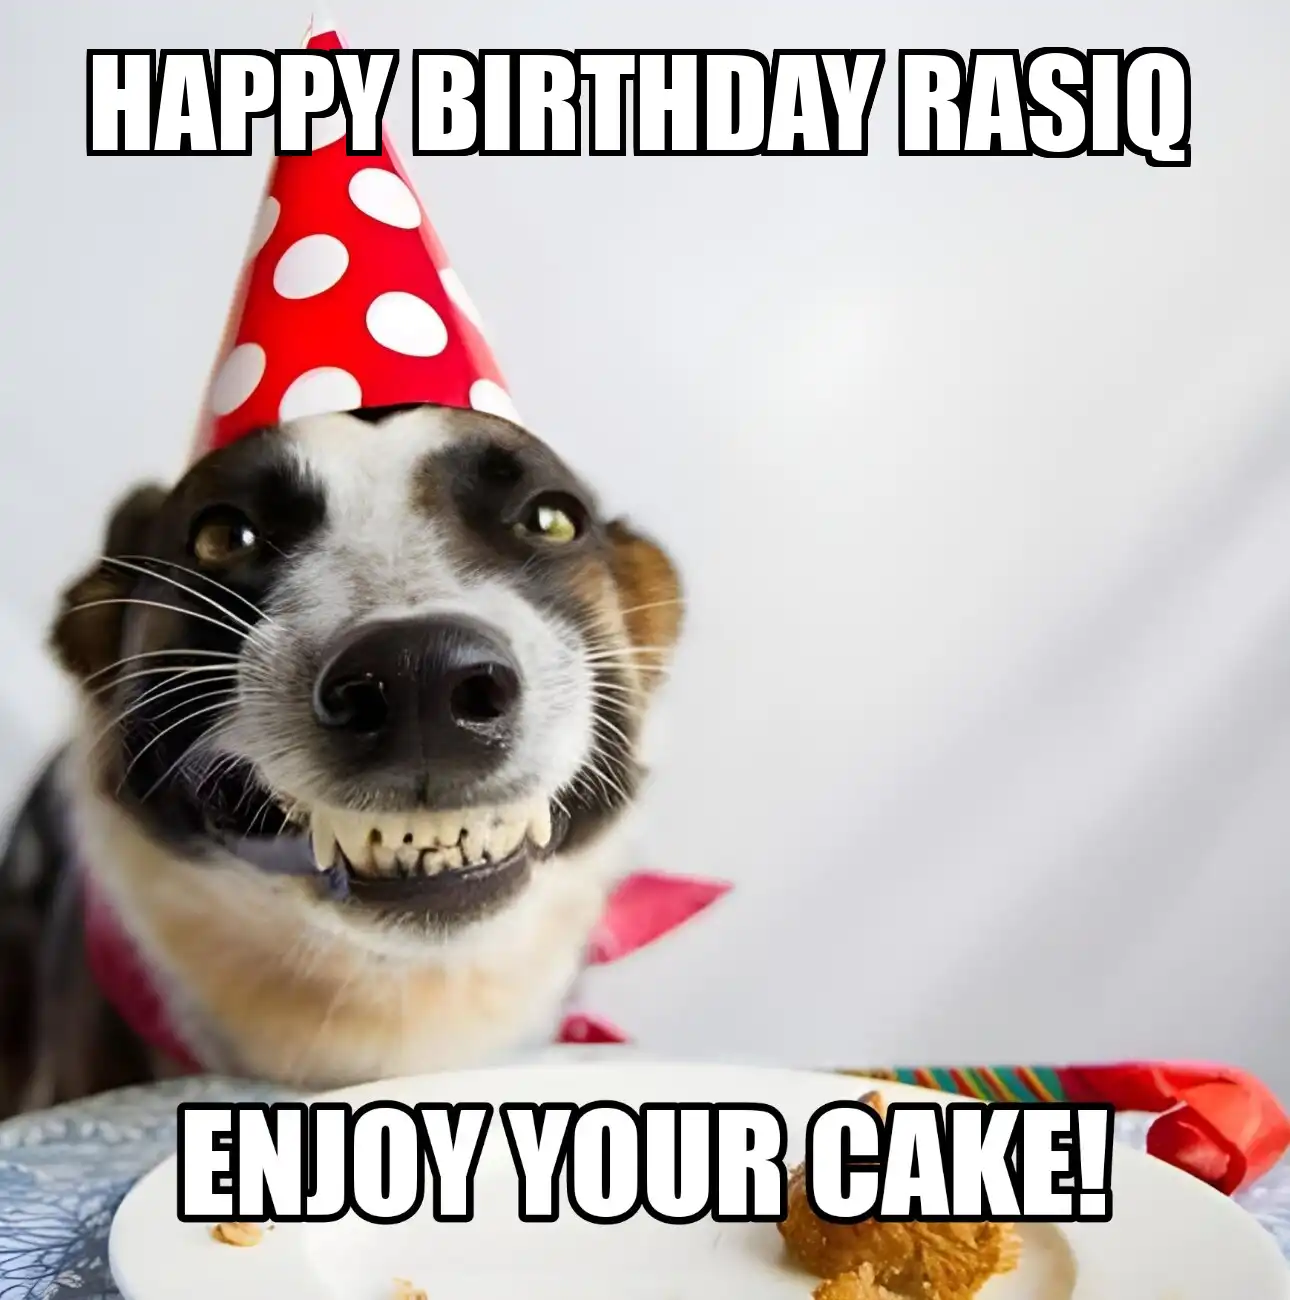 Happy Birthday Rasiq Enjoy Your Cake Dog Meme